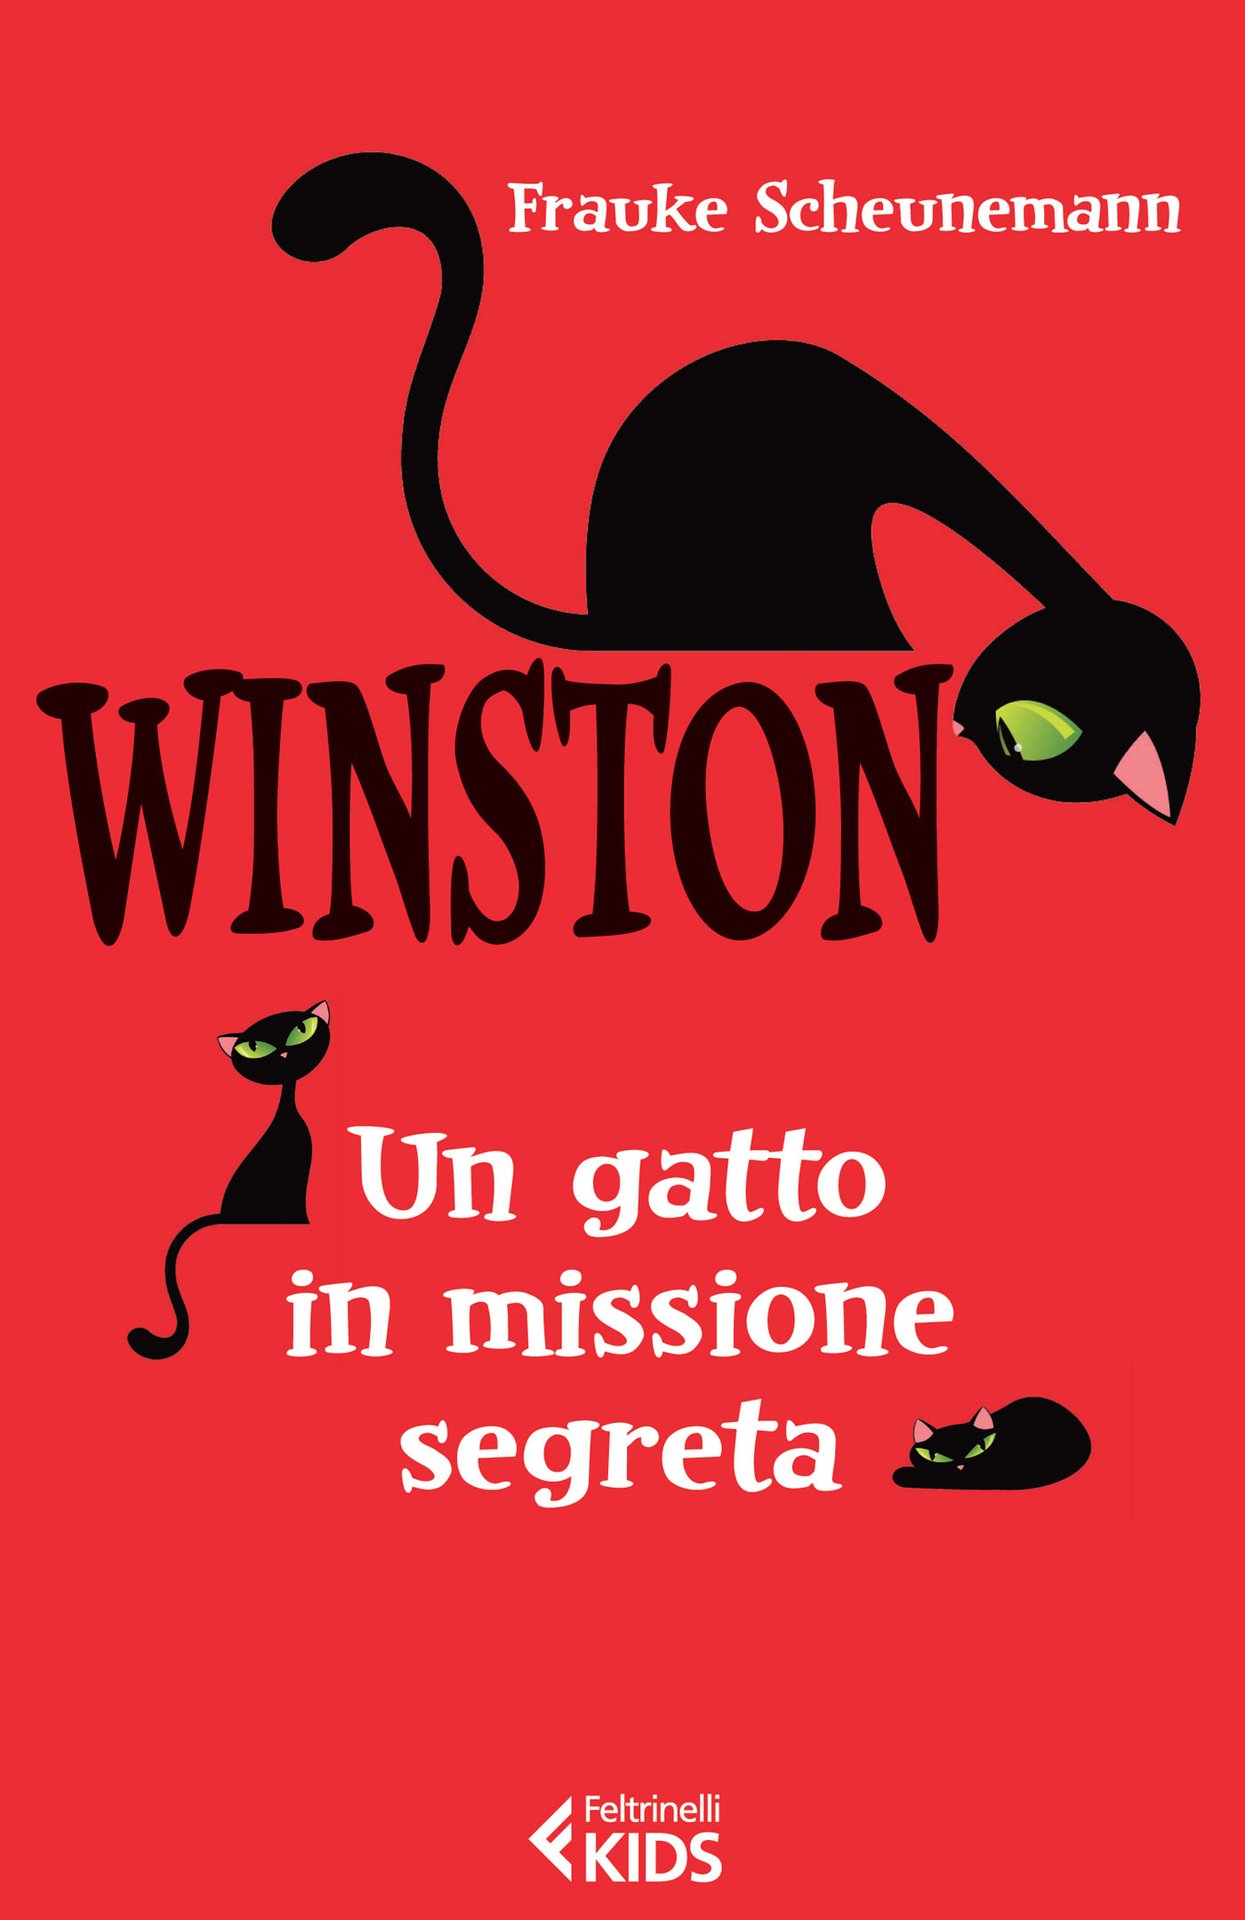 Winston, un gatto in missione segreta